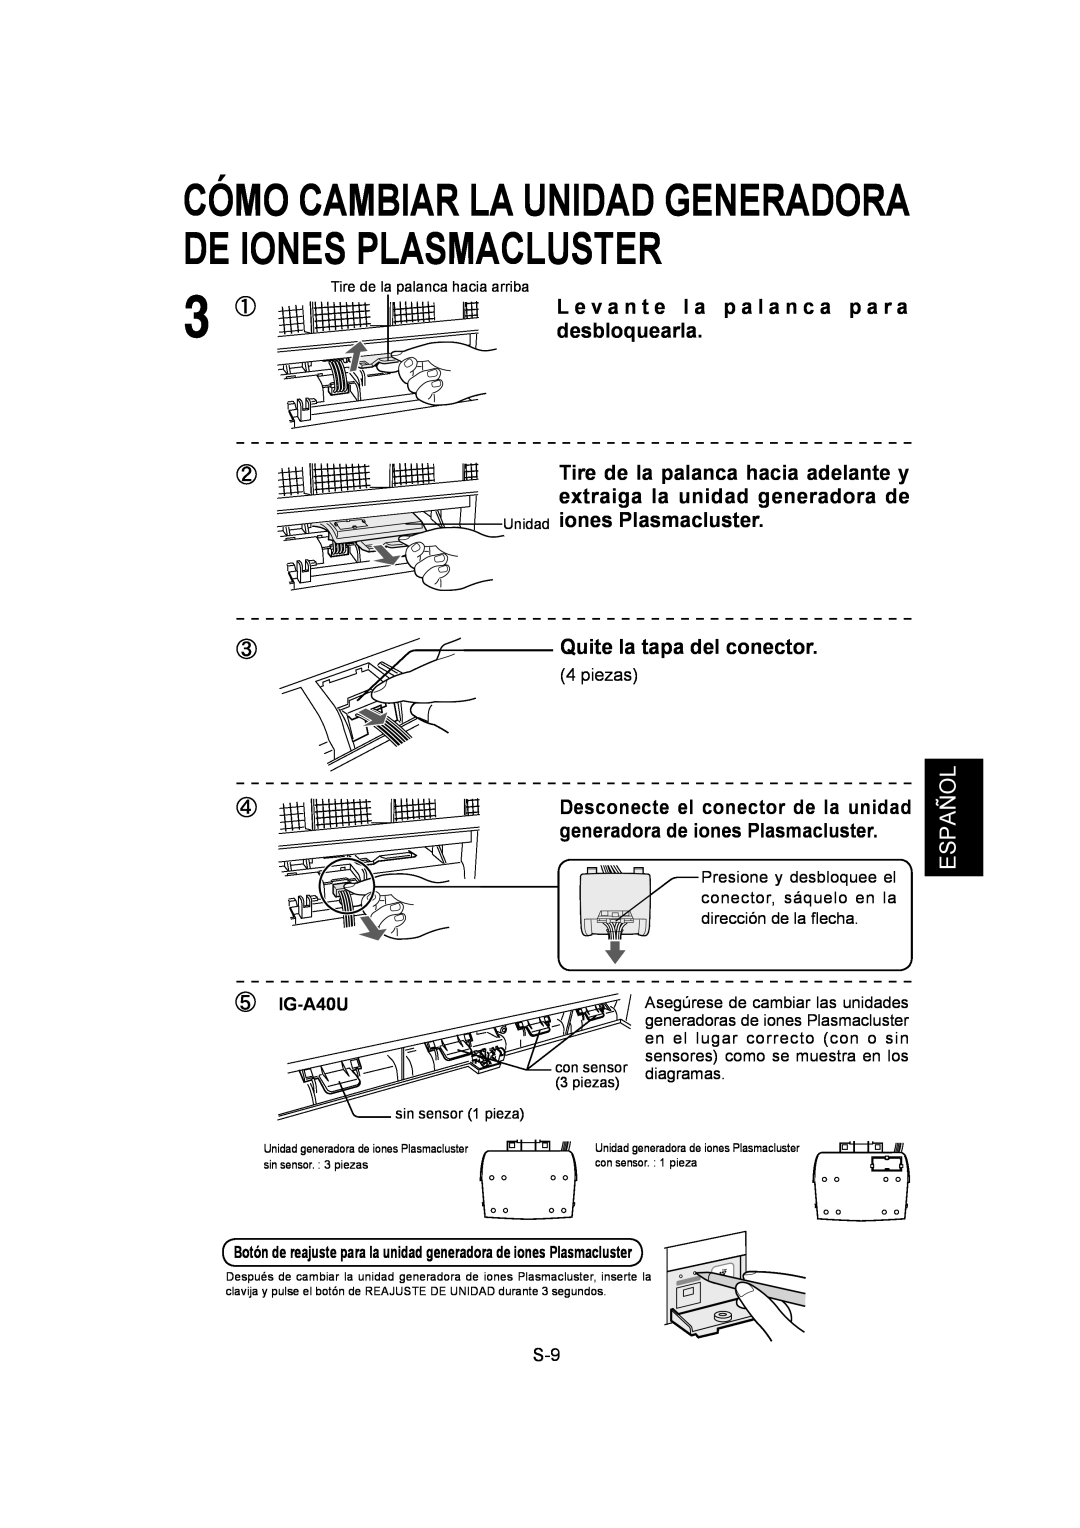 Sharp IG-A40U operation manual Español, L e v a n t e l a p a l a n c a p a r a, desbloquearla, Unidad iones Plasmacluster 